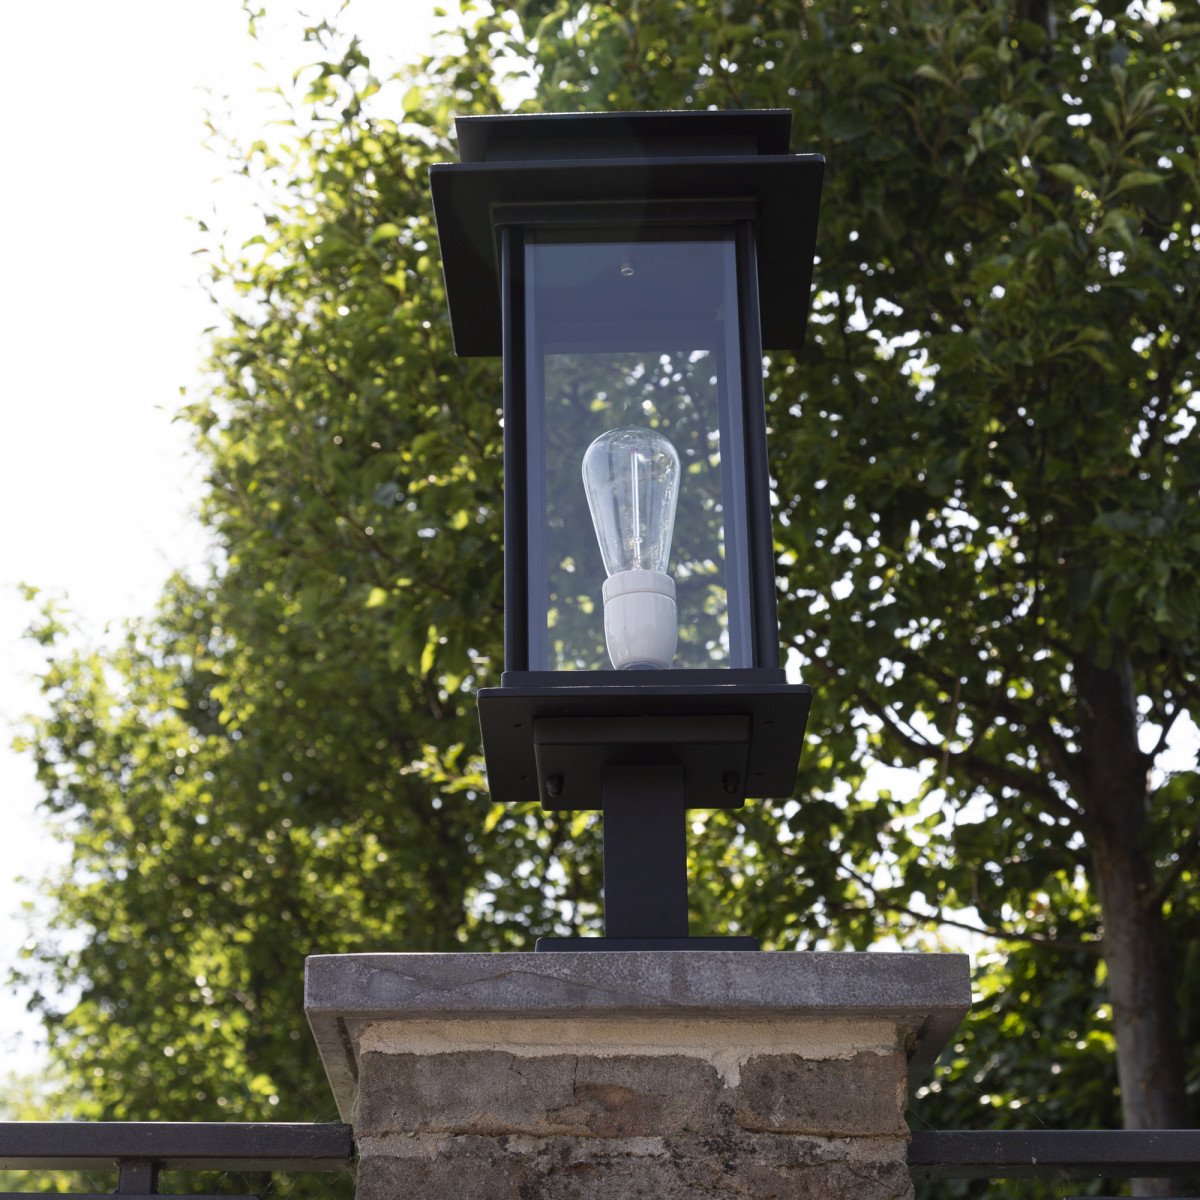 Buitenlamp Praag II sokkel, prachtige strak klassiek tijdloze unieke buitenverlichting op een voet, stijlvol vormgegeven buitenverlichting en tuinverlichting van KS Verlichting, kwaliteitsverlichting handmade 